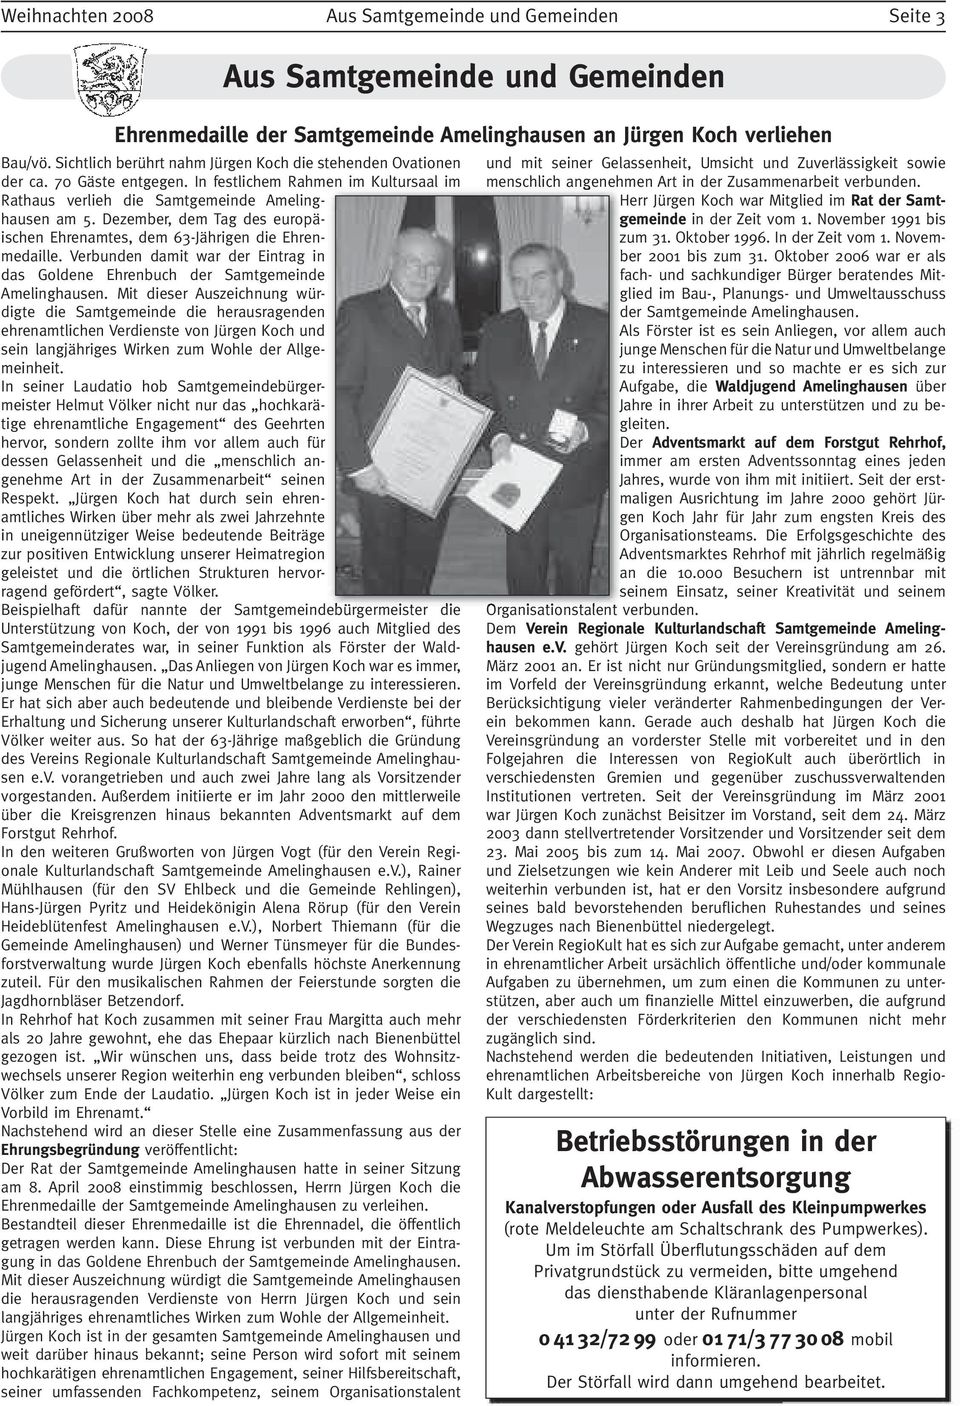 Dezember, dem Tag des europäischen Ehrenamtes, dem 63-Jährigen die Ehrenmedaille. Verbunden damit war der Eintrag in das Goldene Ehrenbuch der Samtgemeinde Amelinghausen.